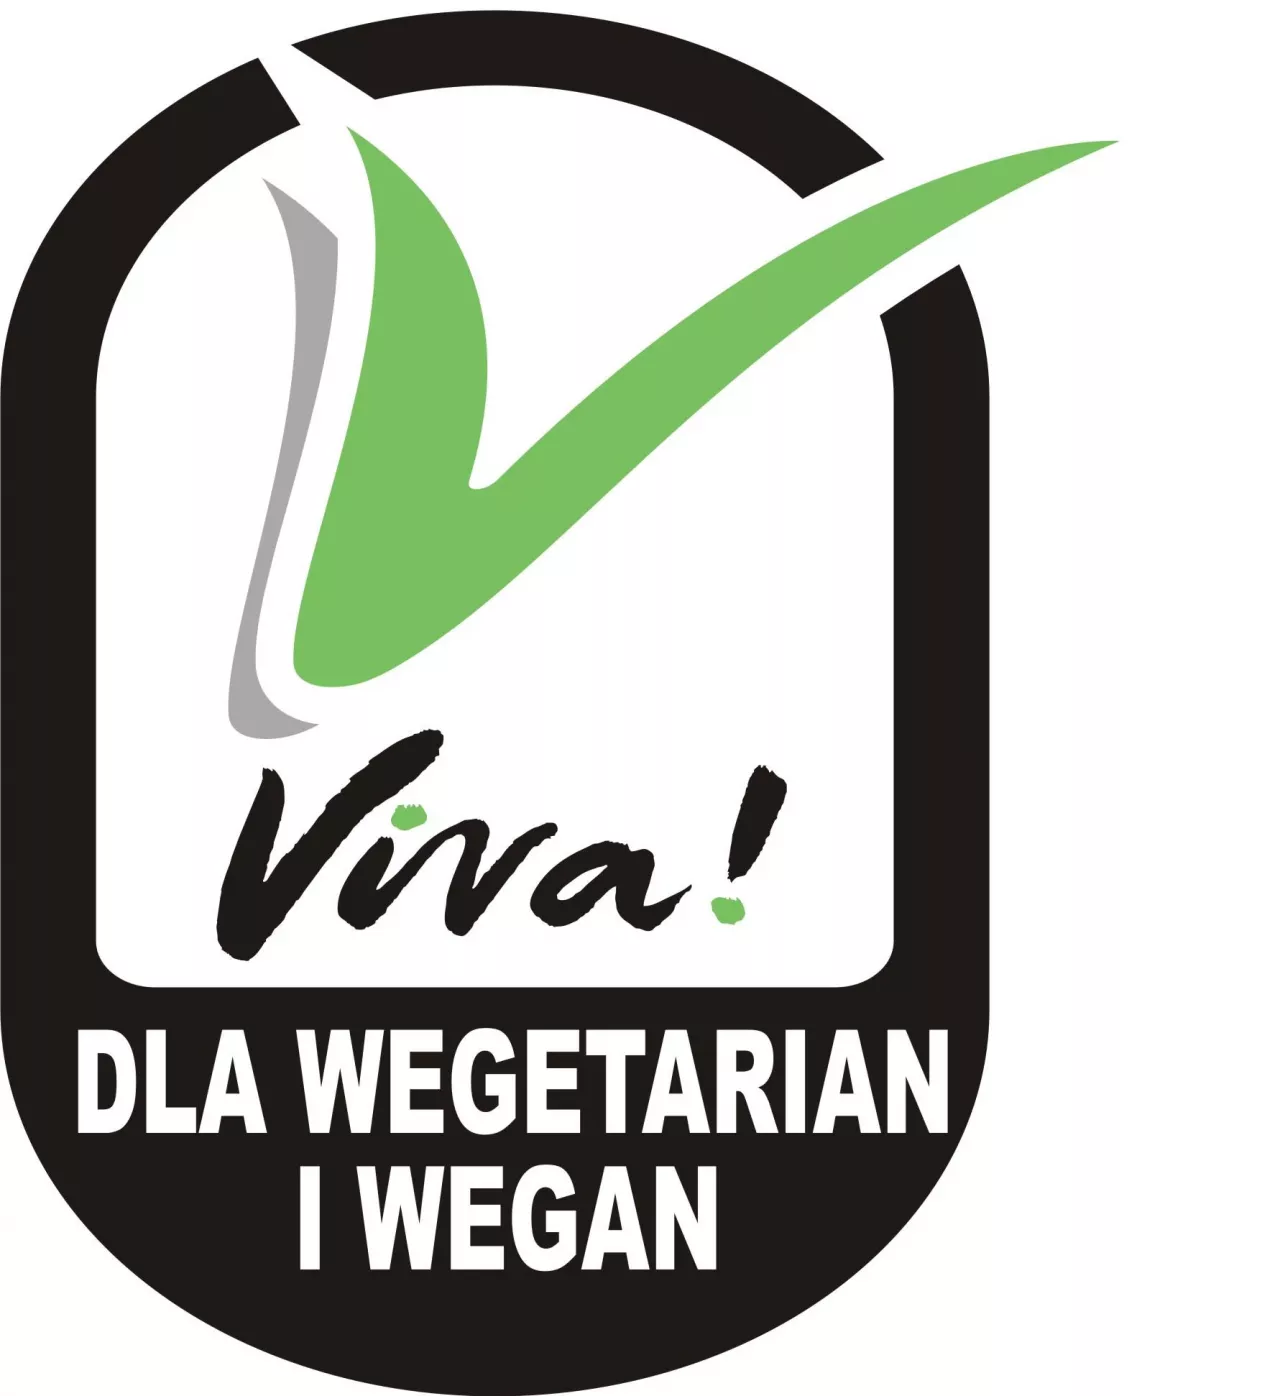 Znak V - Certyfikat dla produktów wegańskich (materiał partnera)